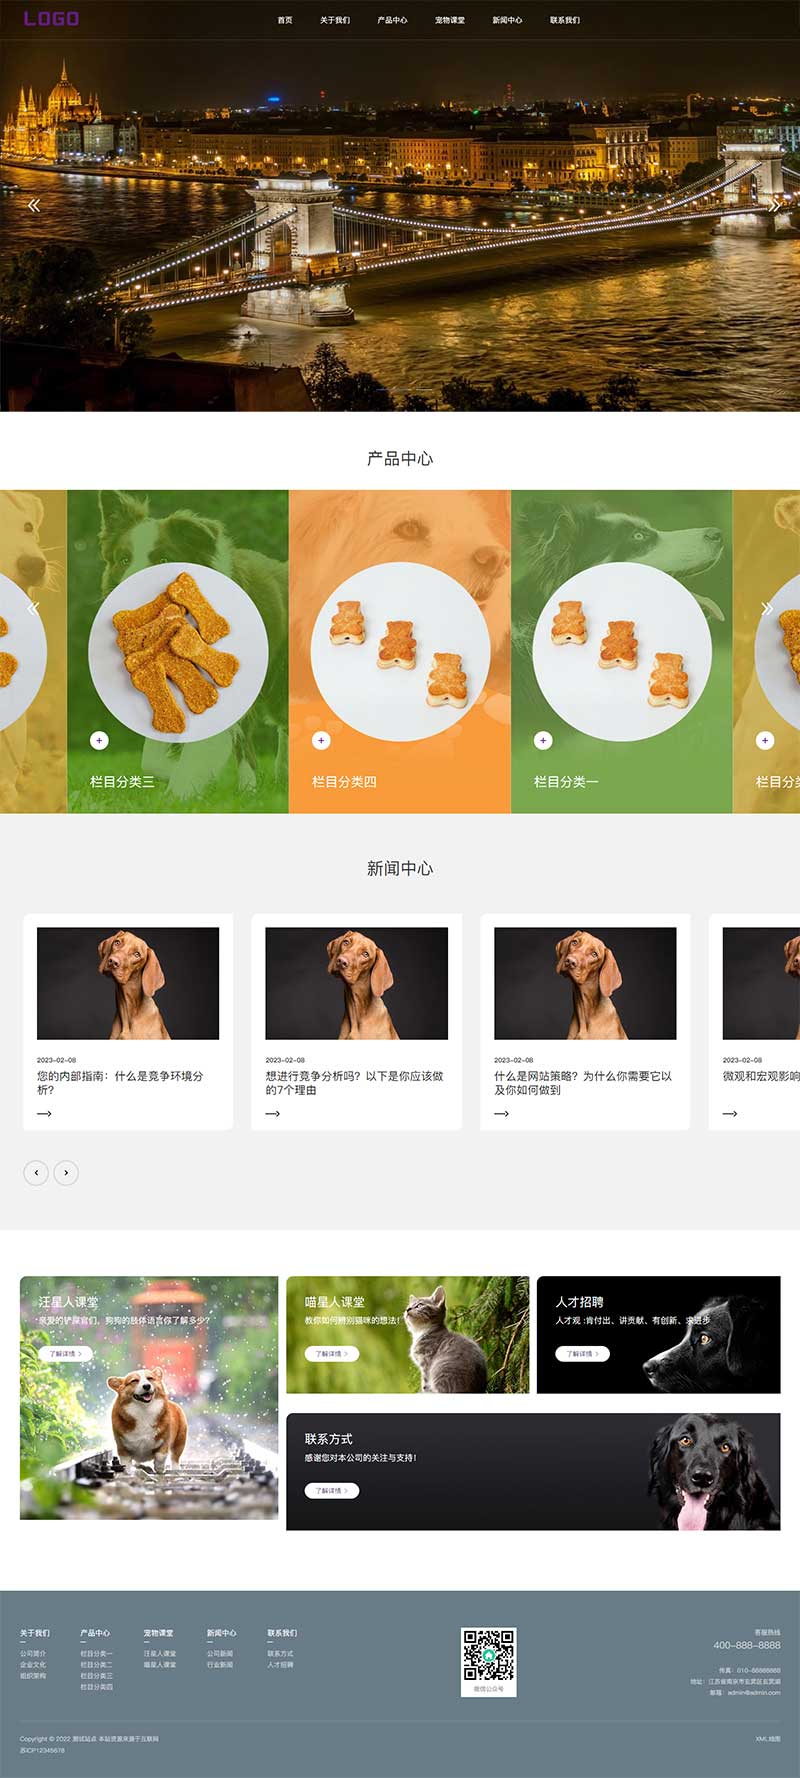 (PC+WAP)宠物饲养饲料宠物用品企业网站电脑端模板展示图片